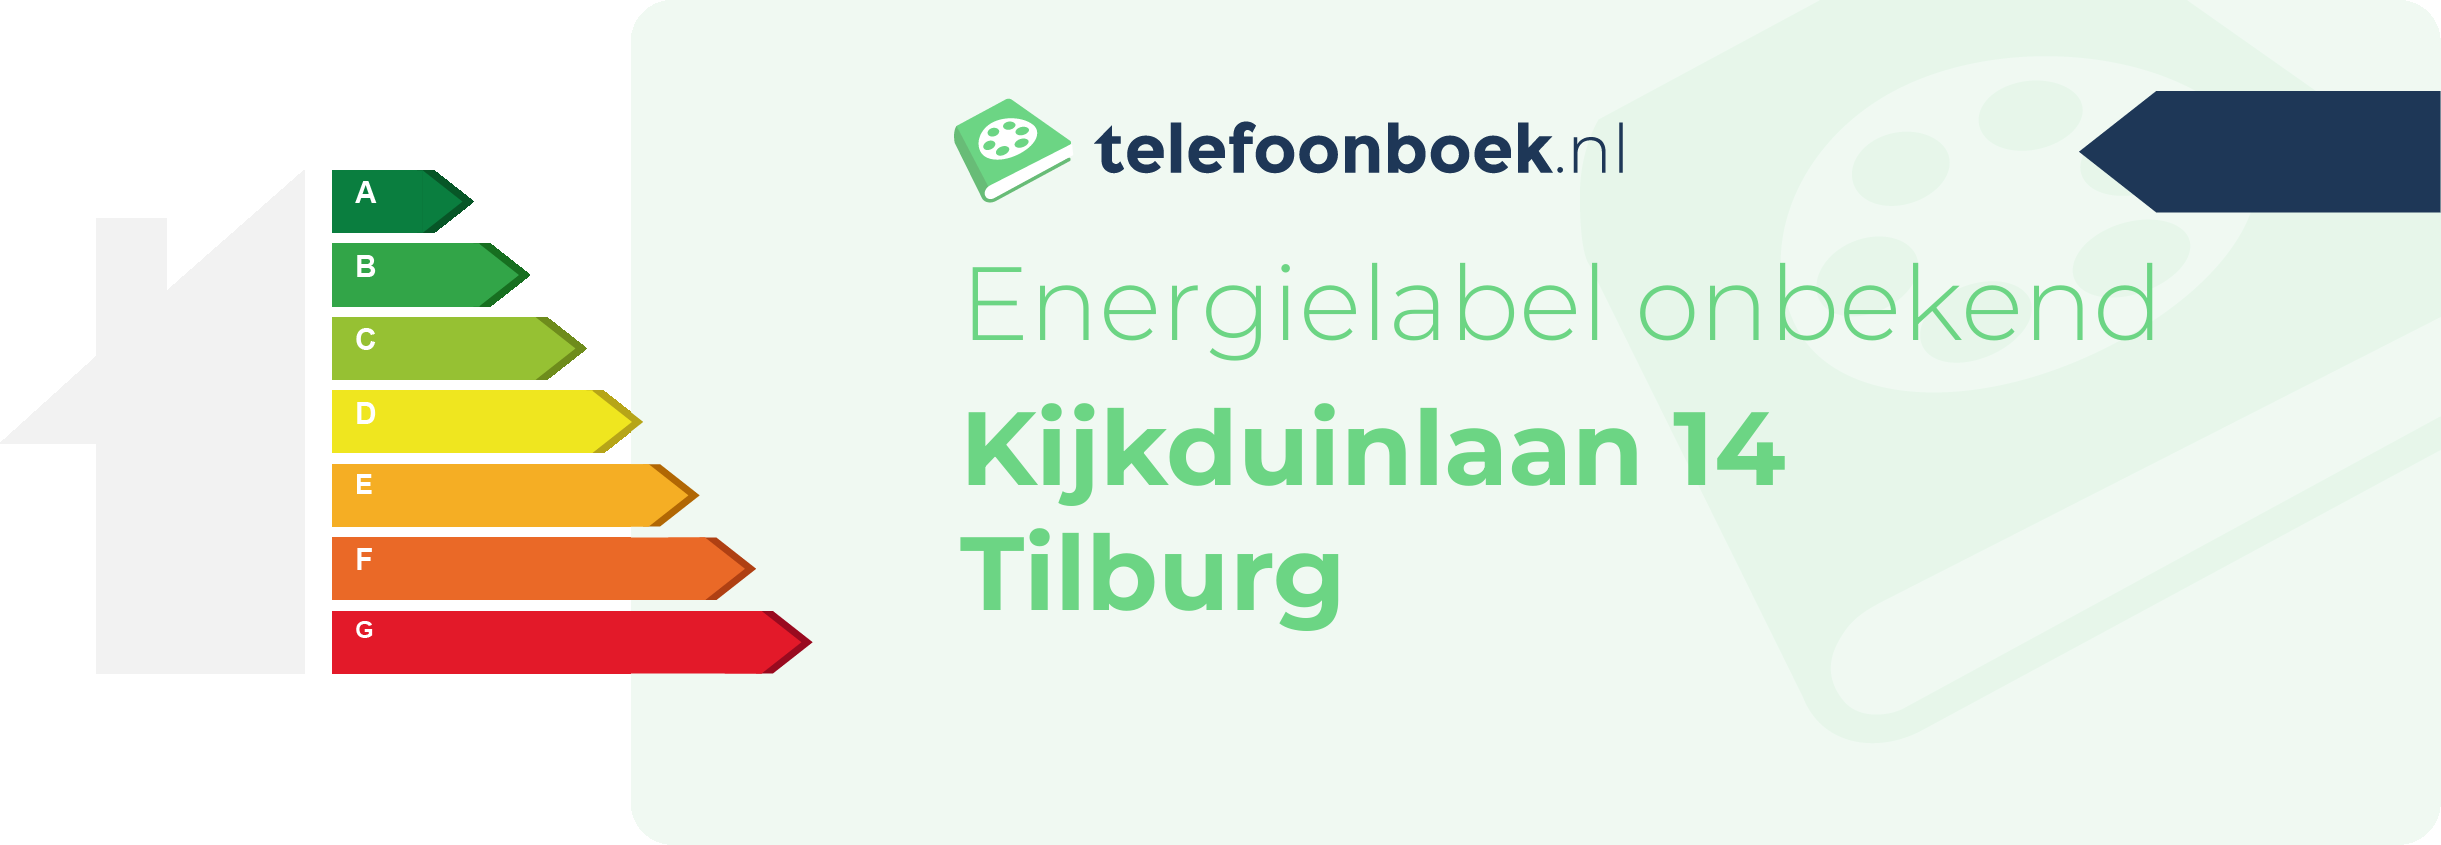 Energielabel Kijkduinlaan 14 Tilburg